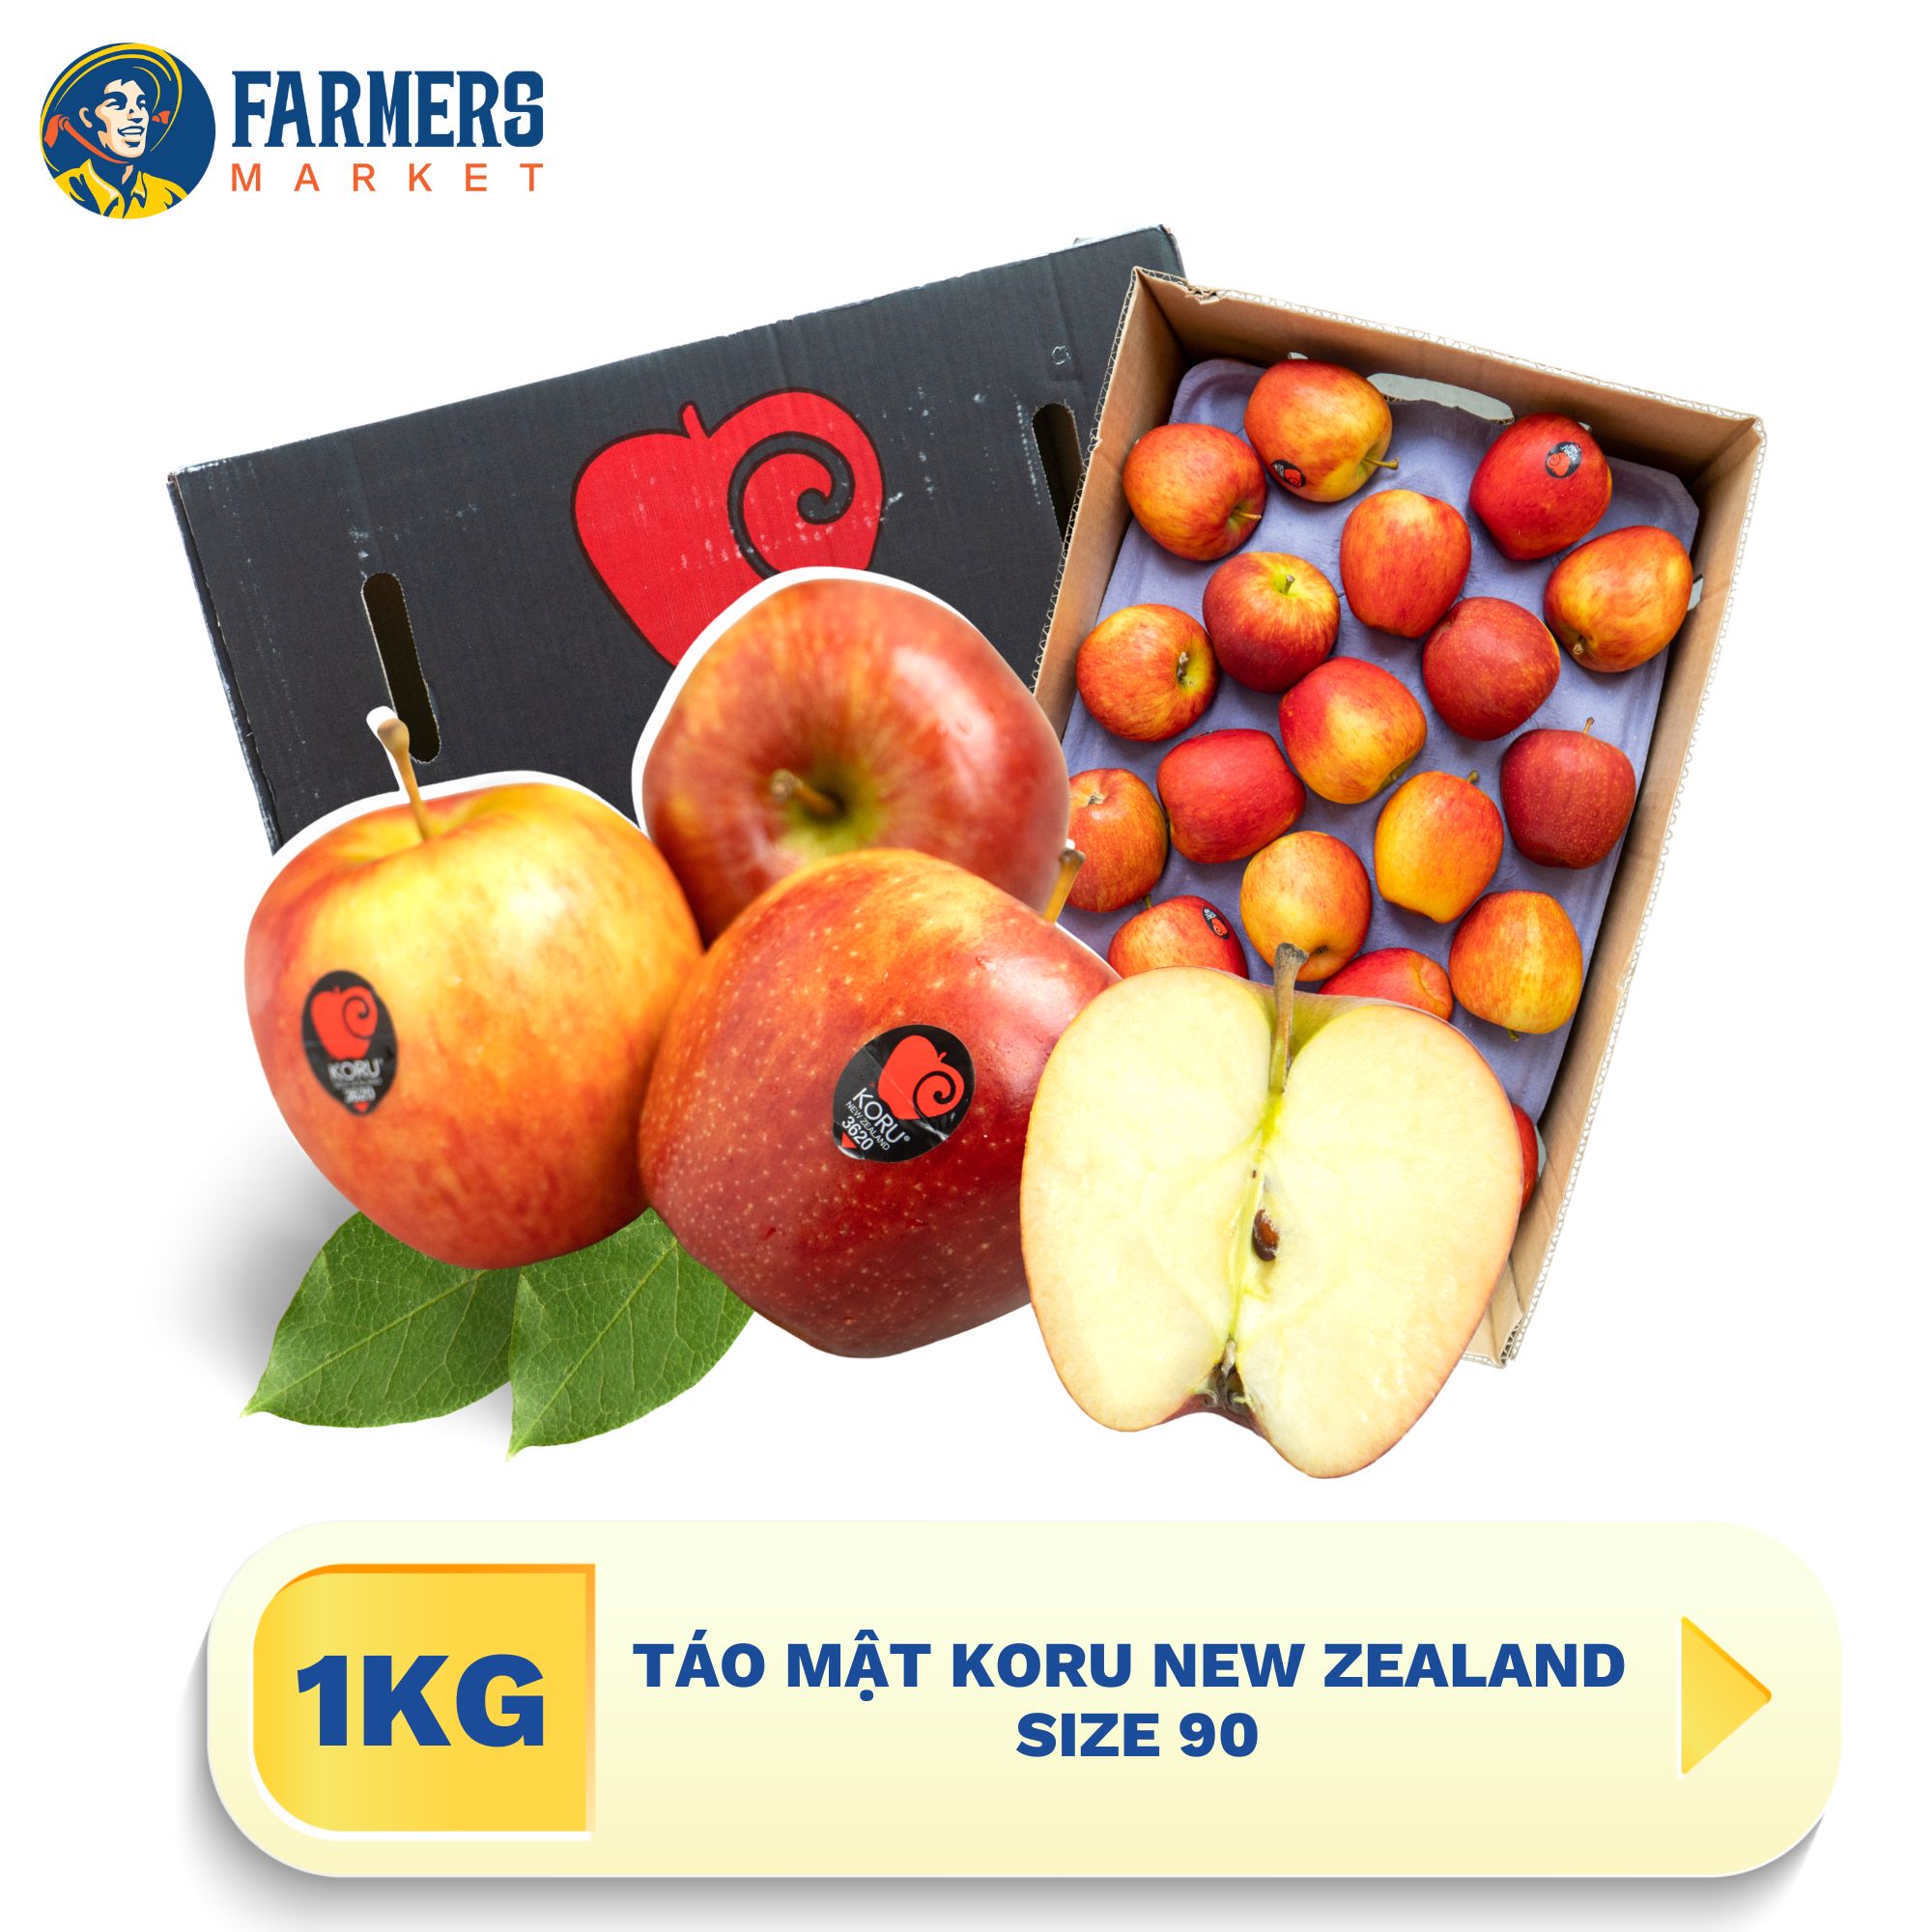 Táo mật Koru New Zealand size 90 1Kg - Táo cứng trái, vỏ đỏ căng mọng